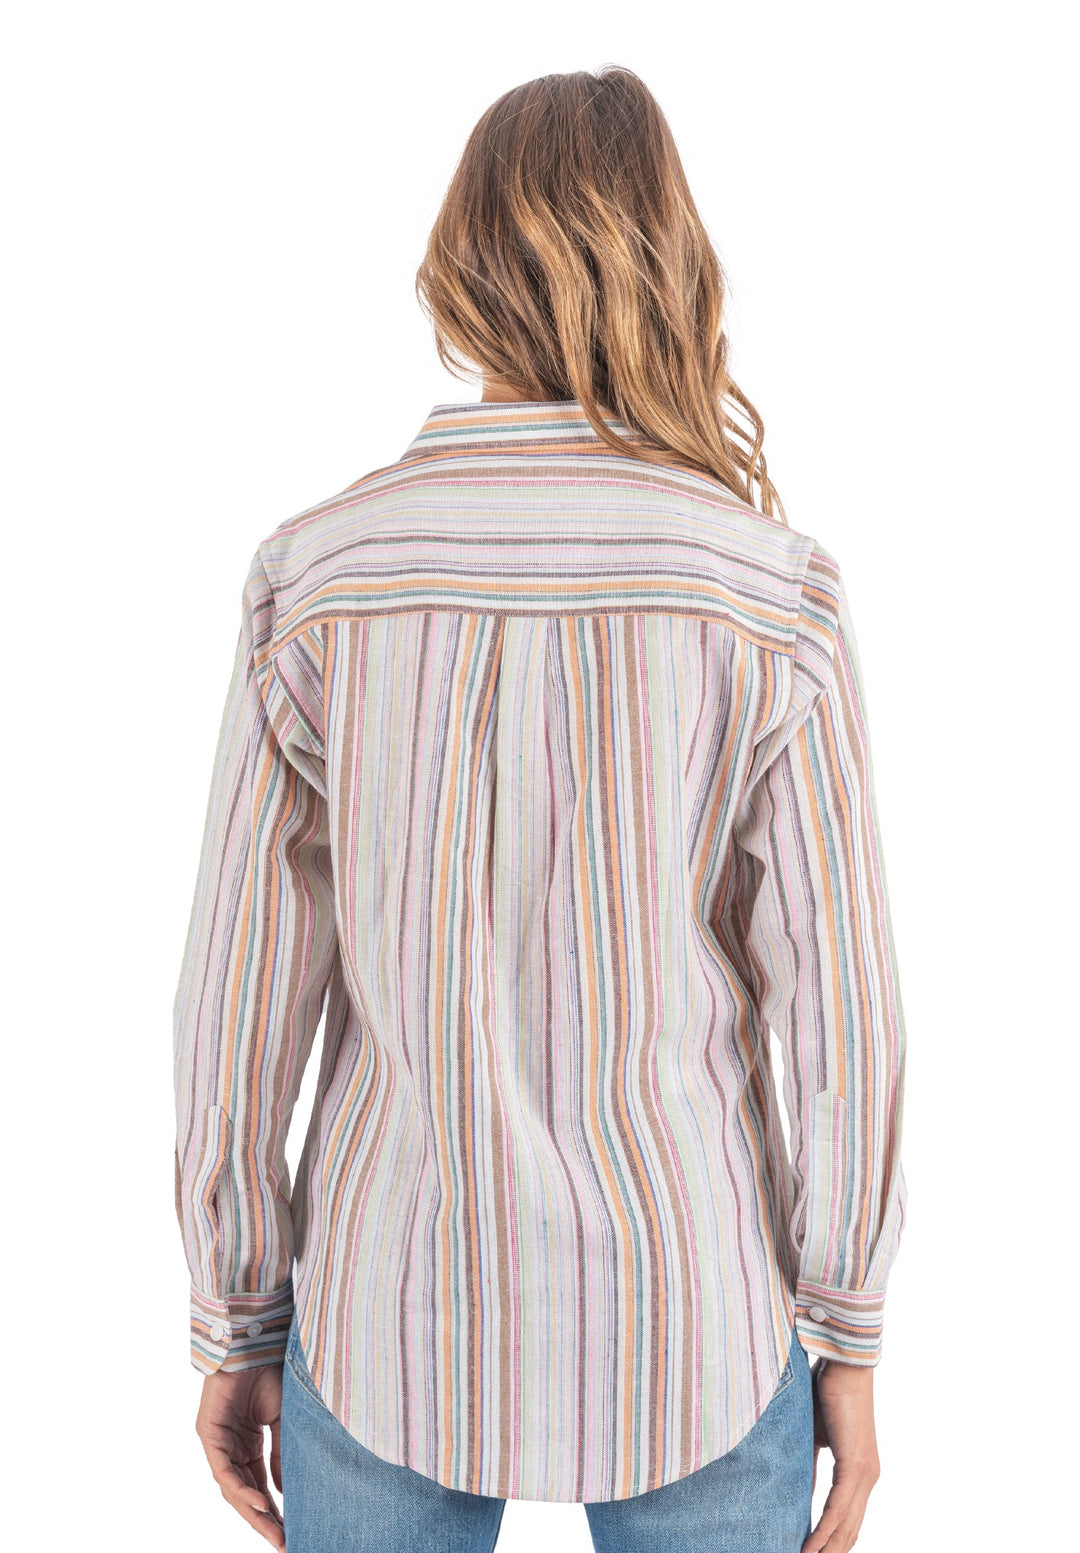 Iris Warm Stripes Relaxed Fit Linen Shirt